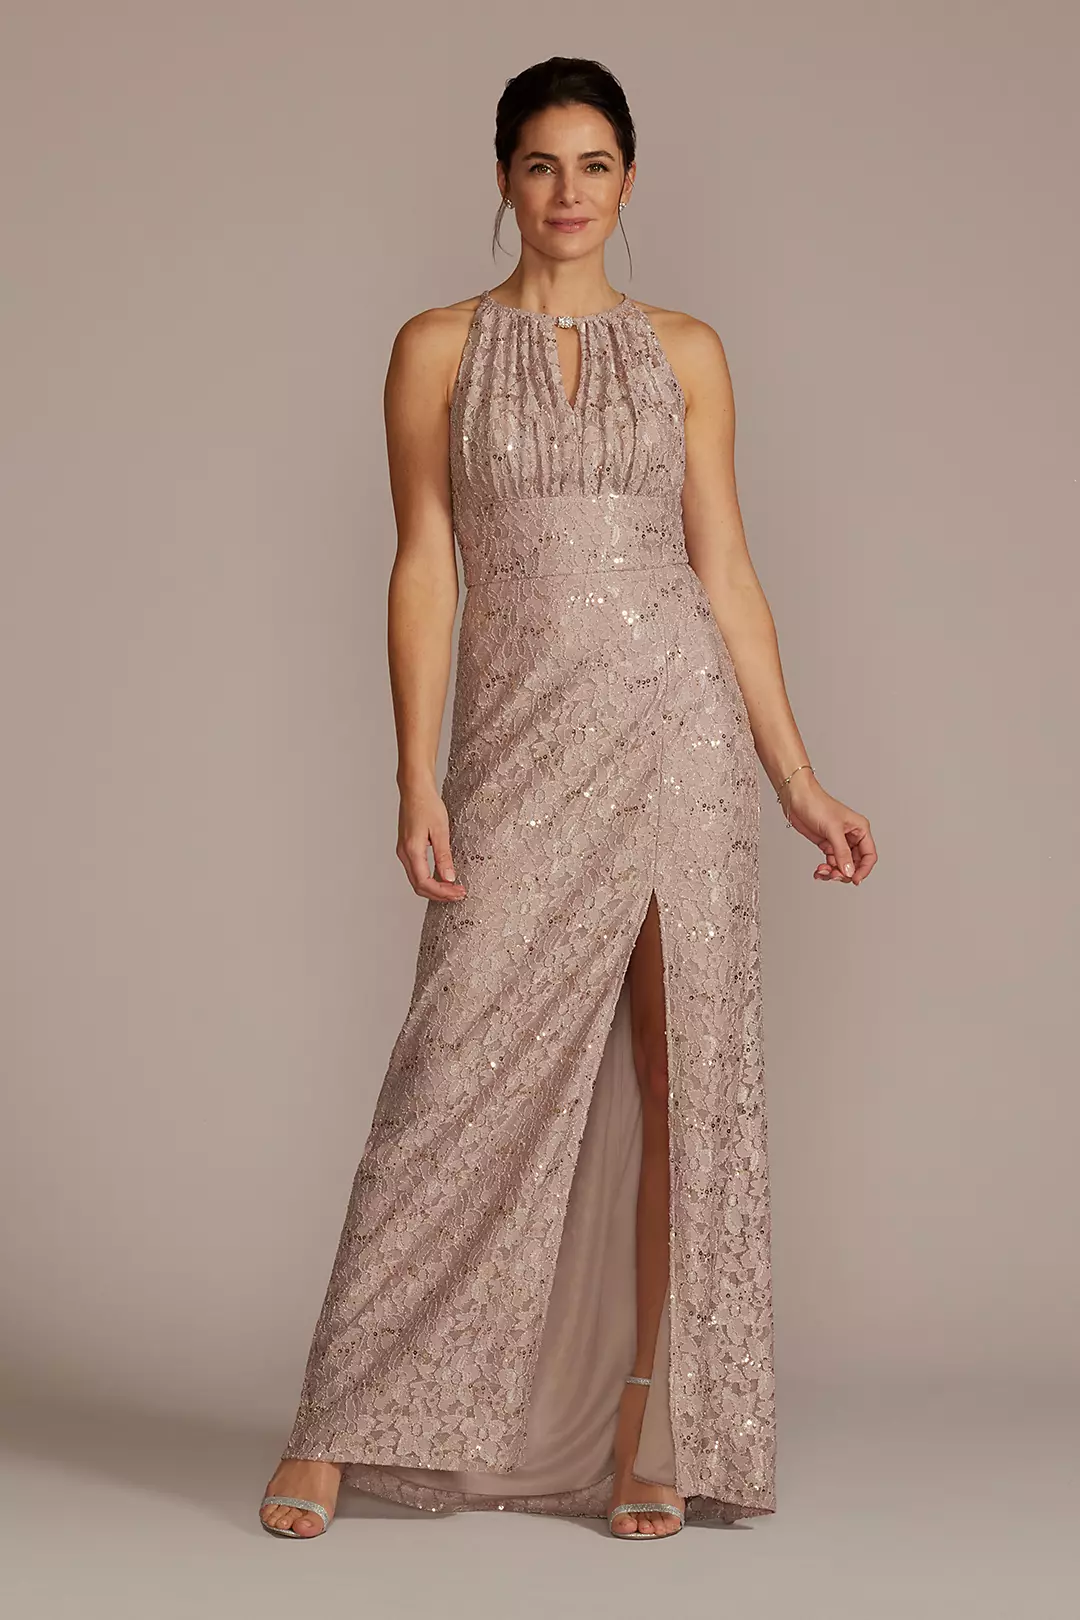 Stretch Lace Sheath Dress with Embellished Keyhole Image